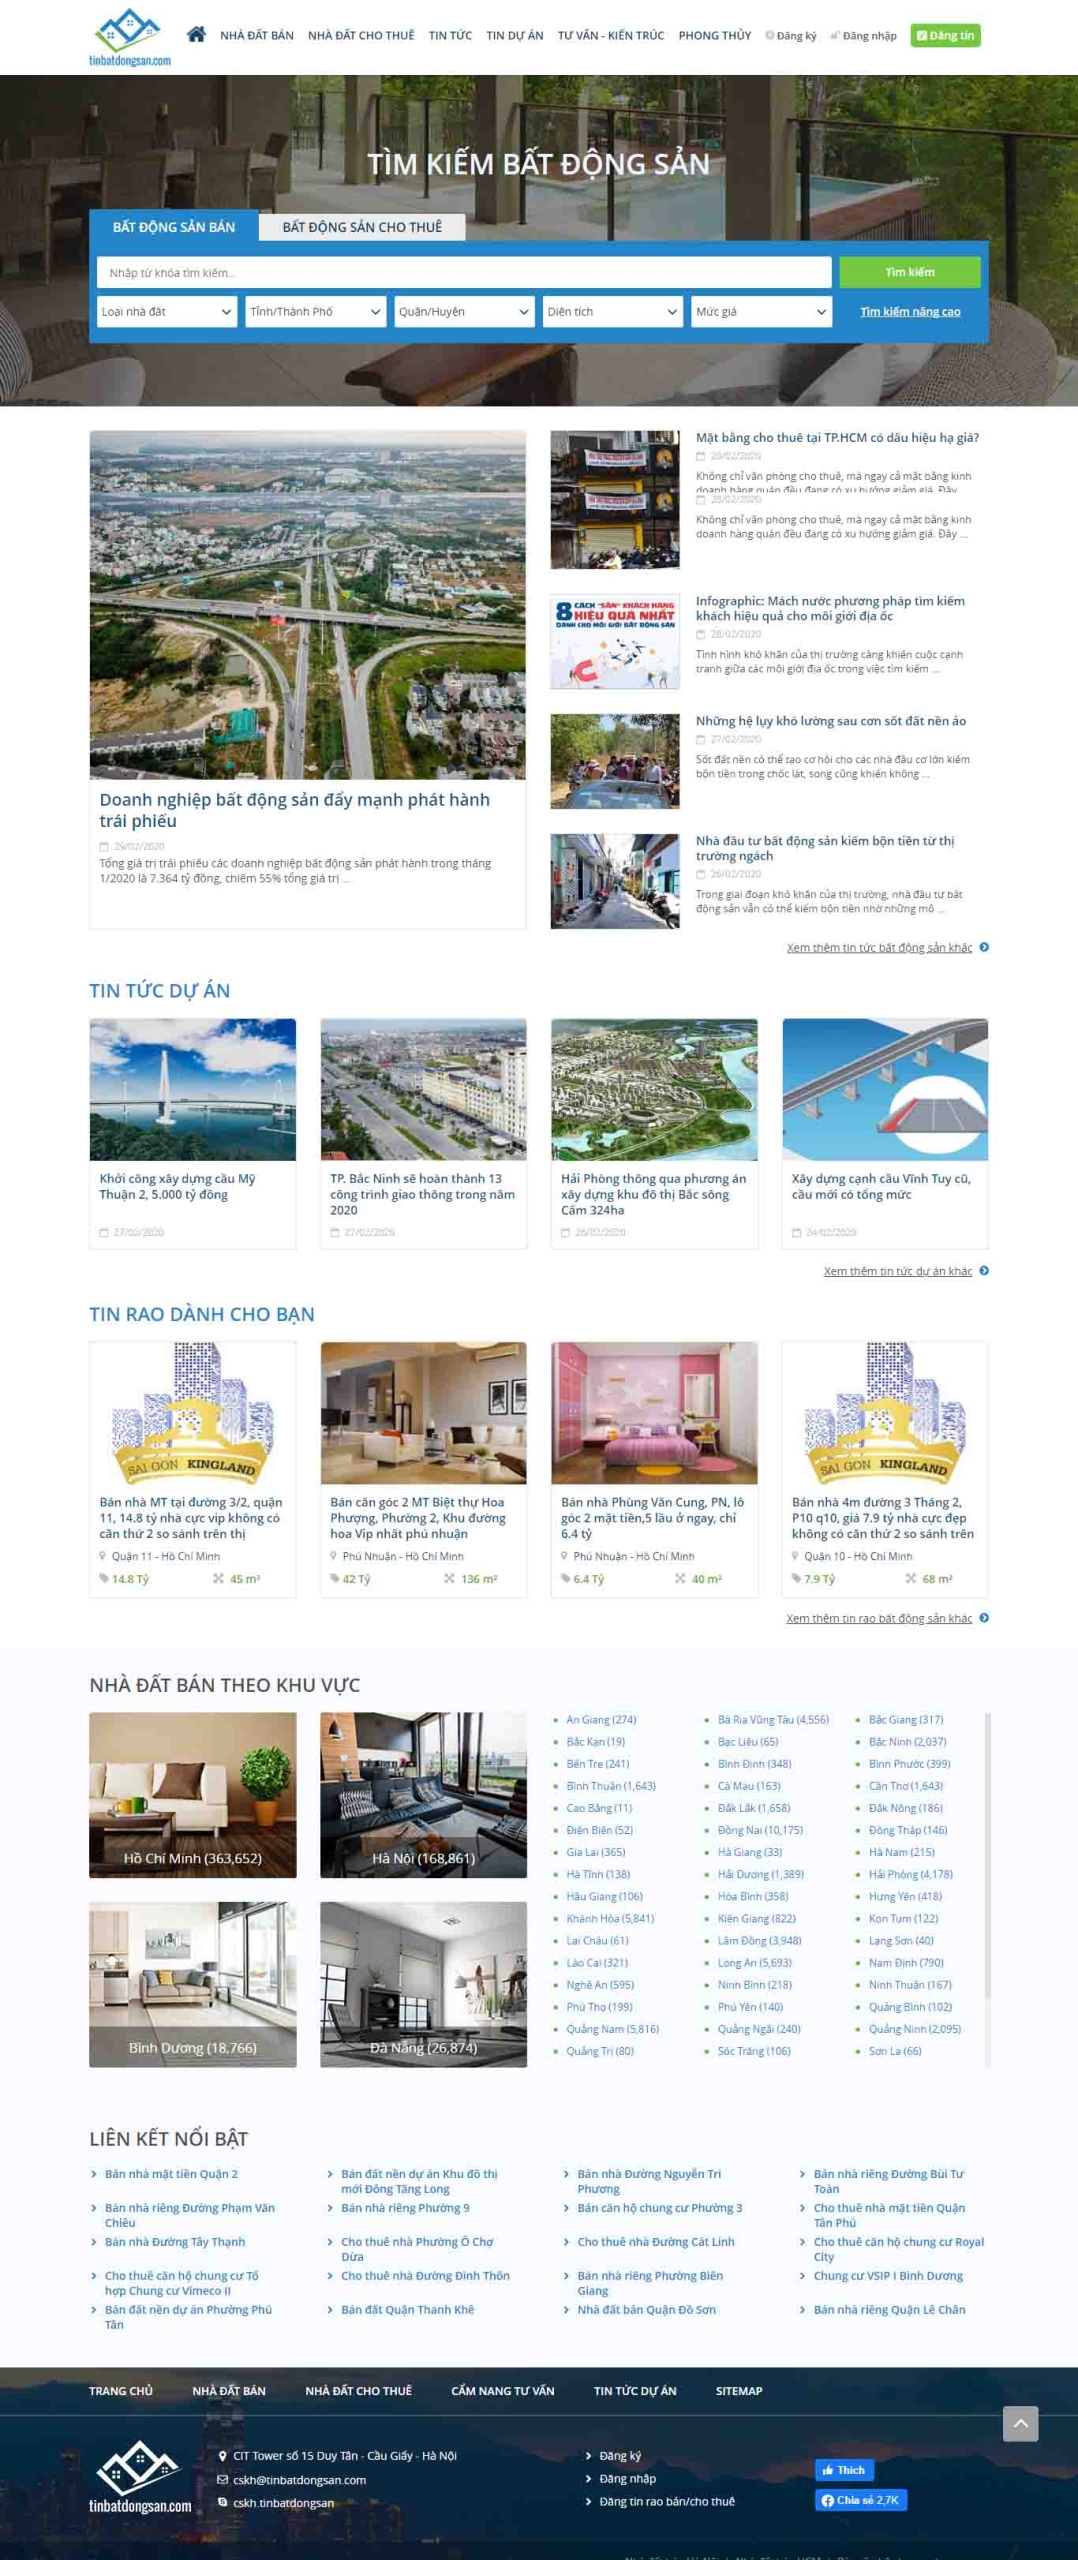 Mẫu giao diện thiết kế website bất động sản cao cấp